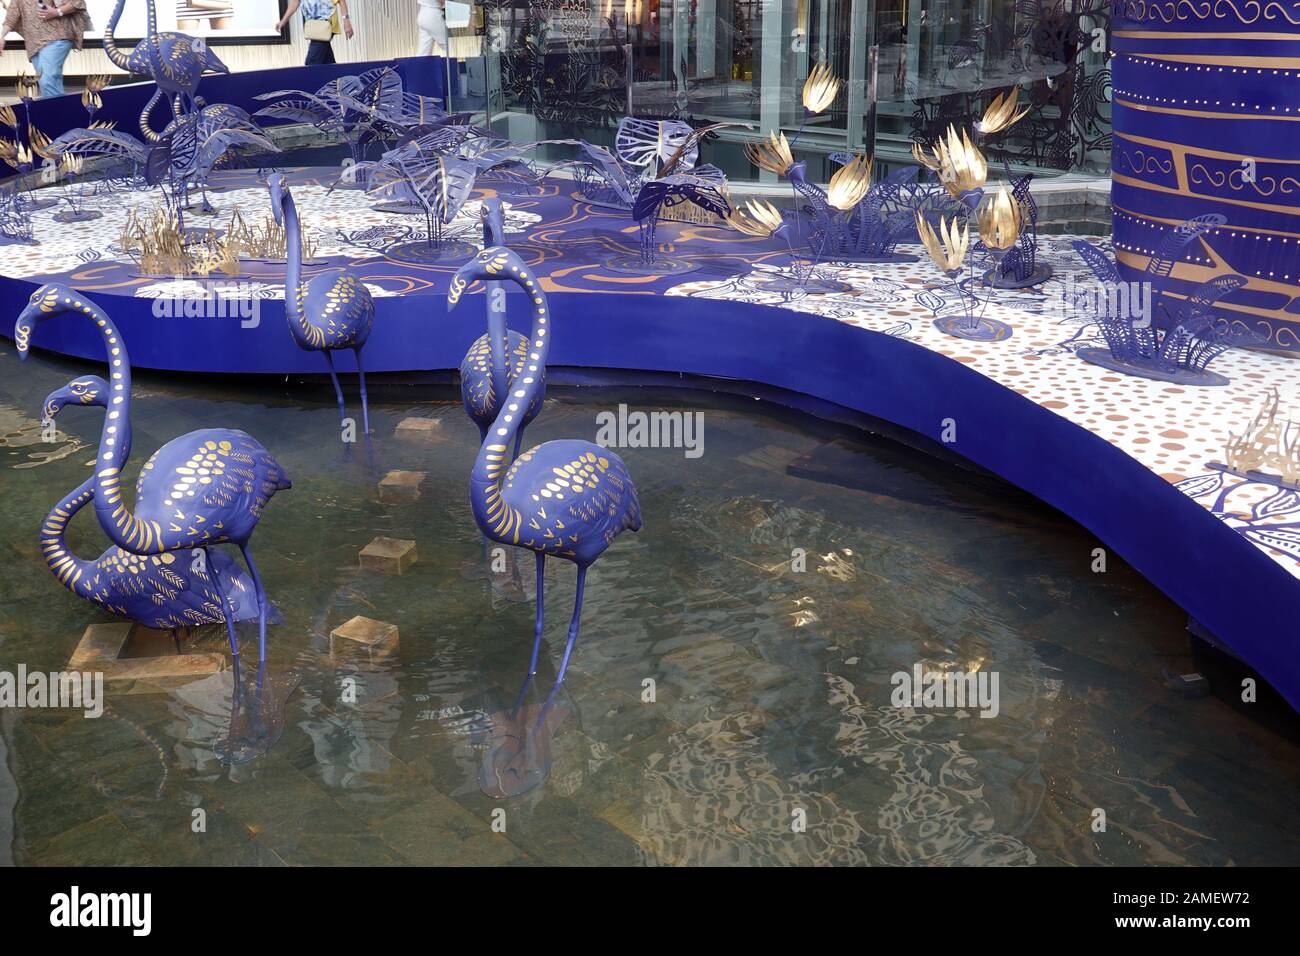 Bangkok, Thailand - December 21, 2019: Blue flamingos in Siam Paragon shopping mall. Stock Photo